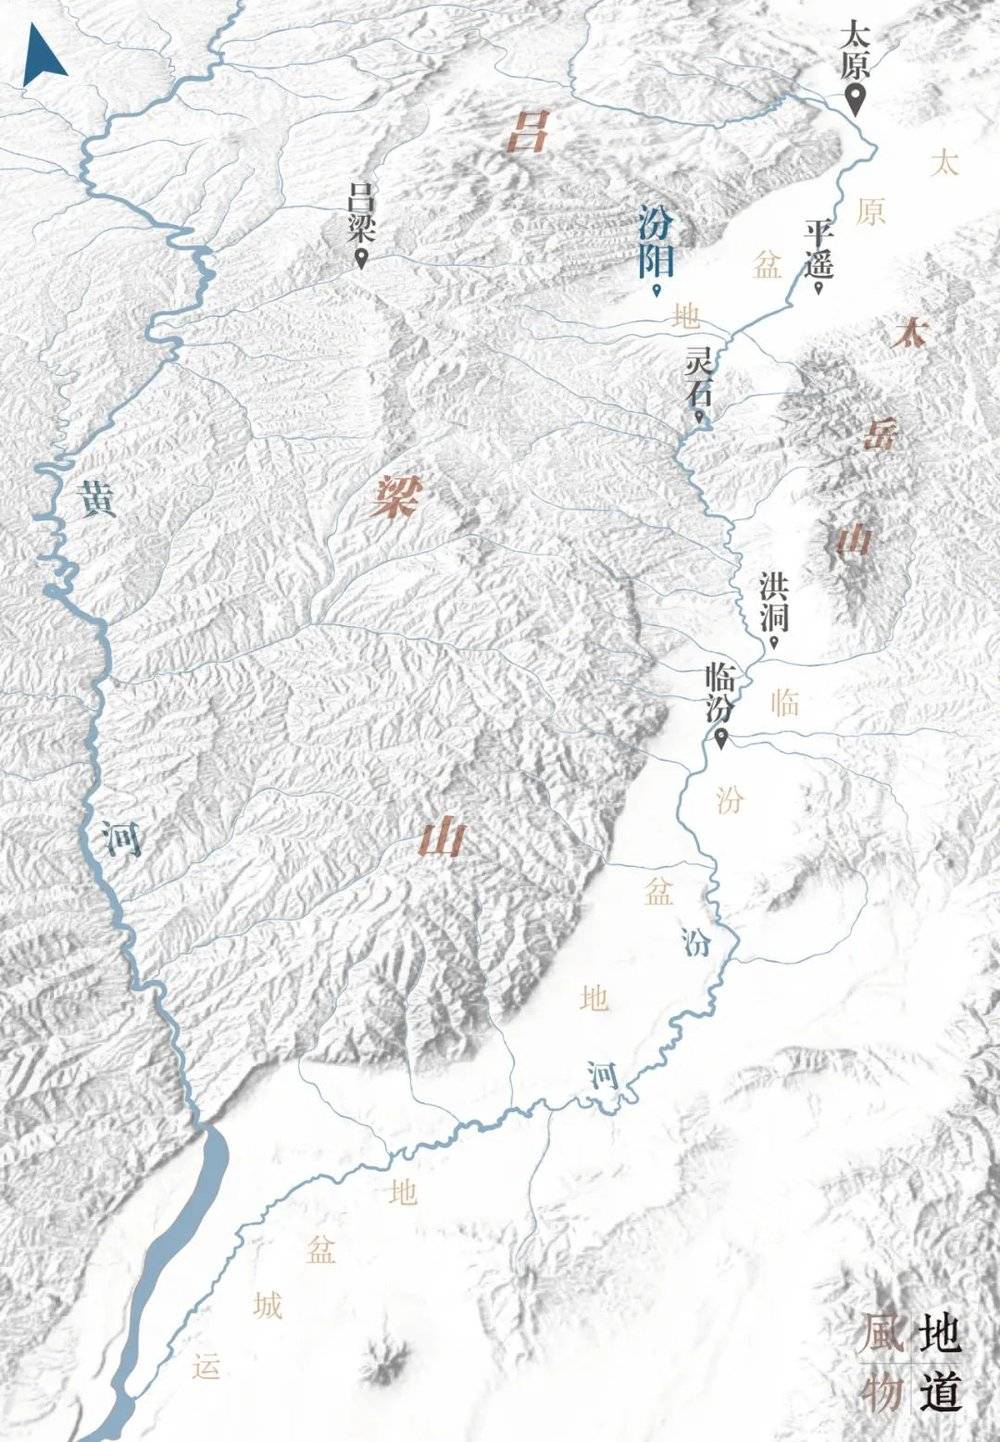 汾河流域地形图。太岳山脉在太行、吕梁之间，汾河之畔。 制图/Paprika